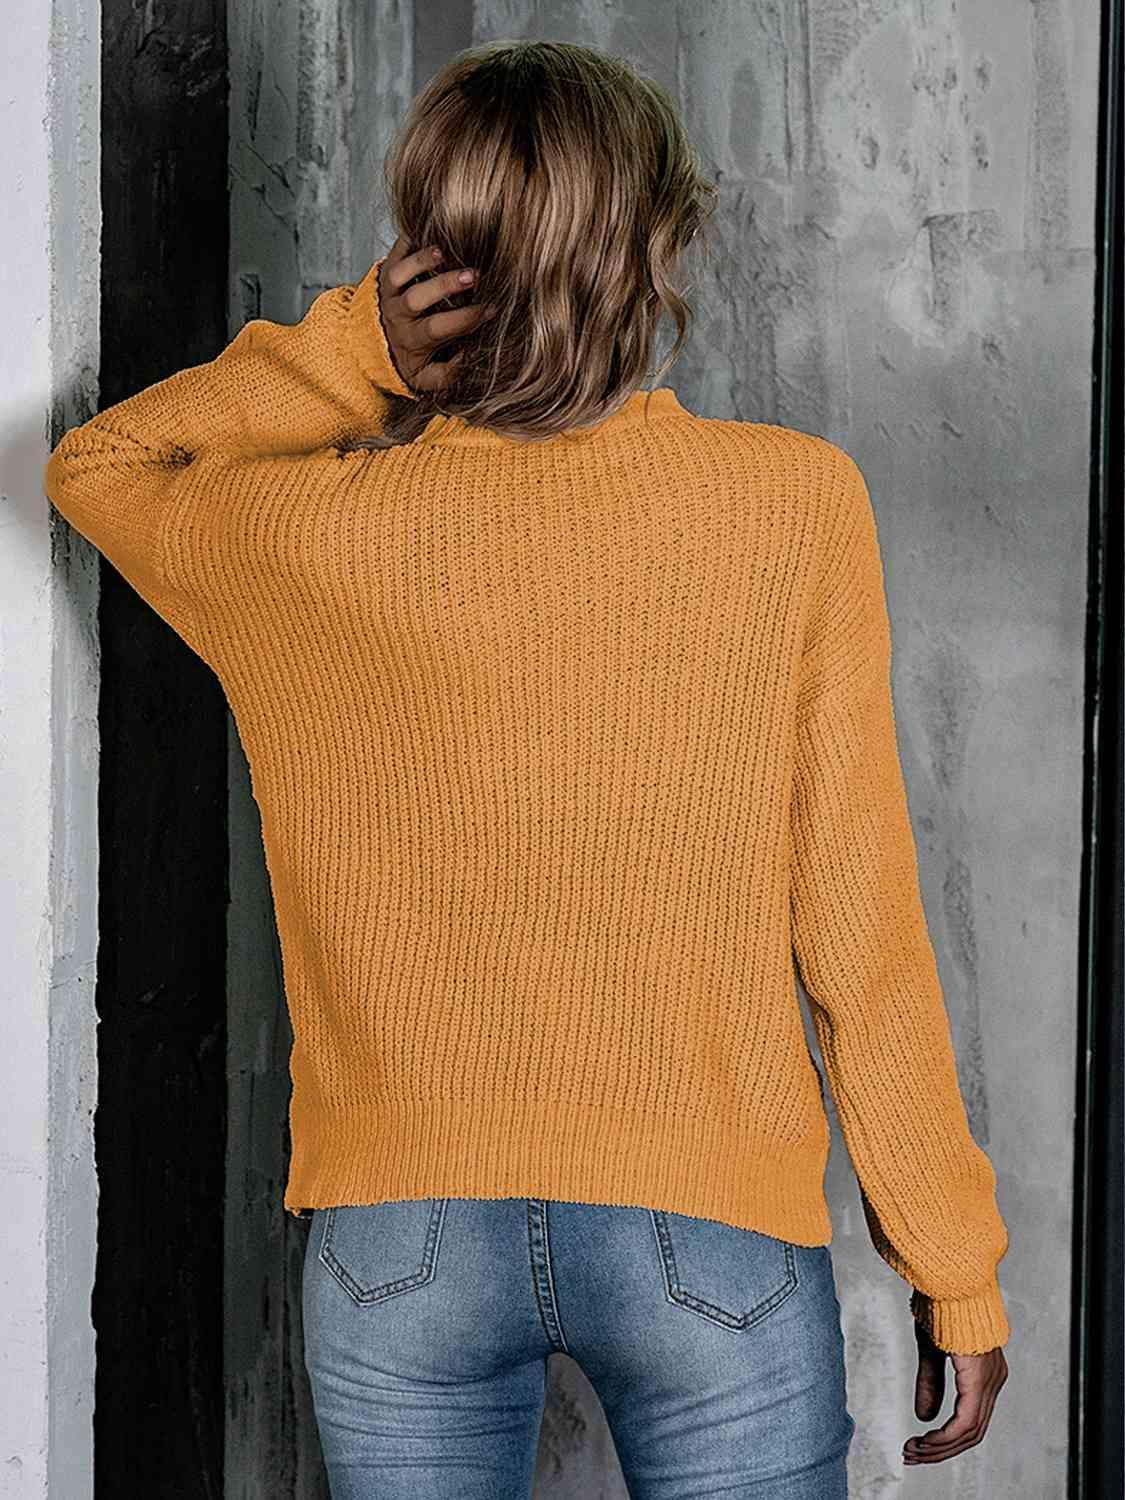 Openwork Mock Neck Long Sleeve Sweater - Bona Fide Fashion